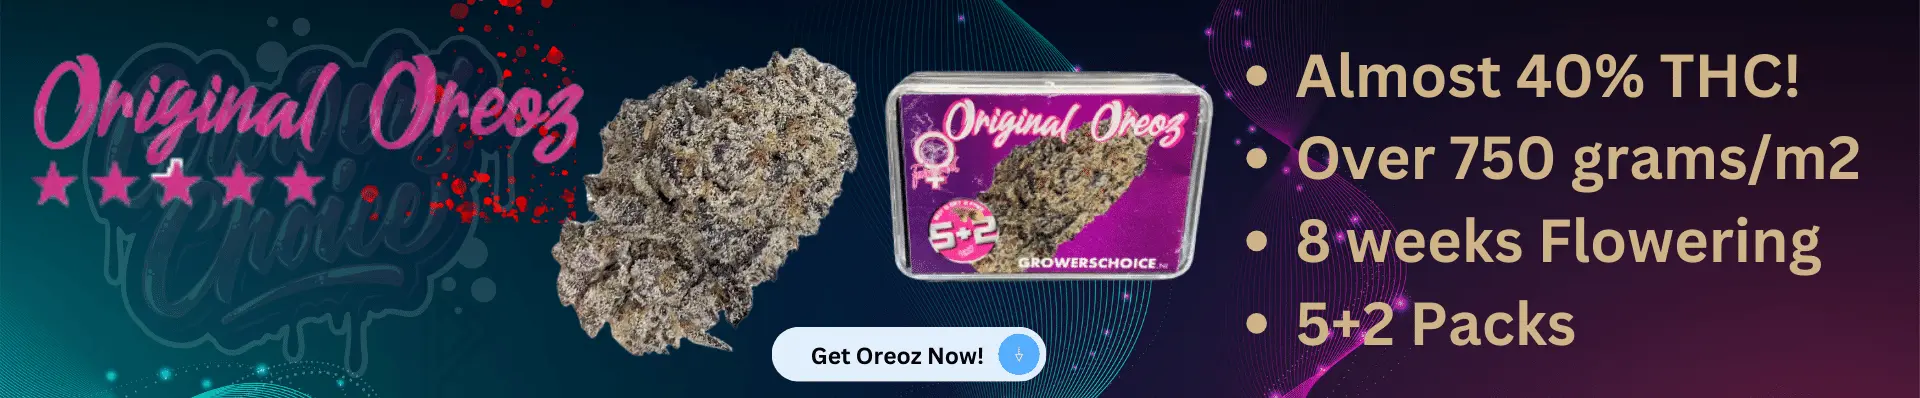 Growers Choice Original Oreoz